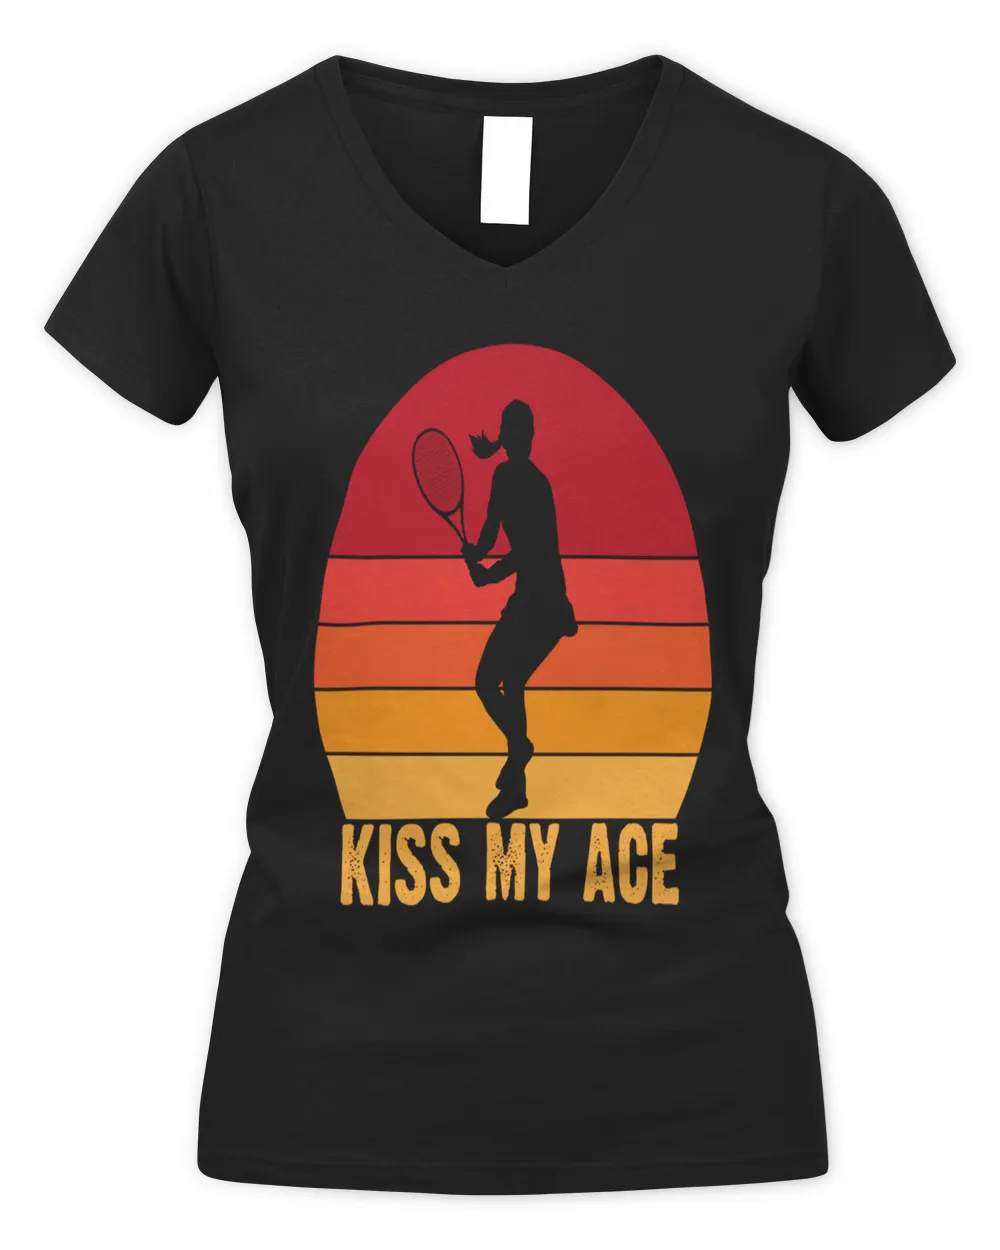 Kiss my ace girl